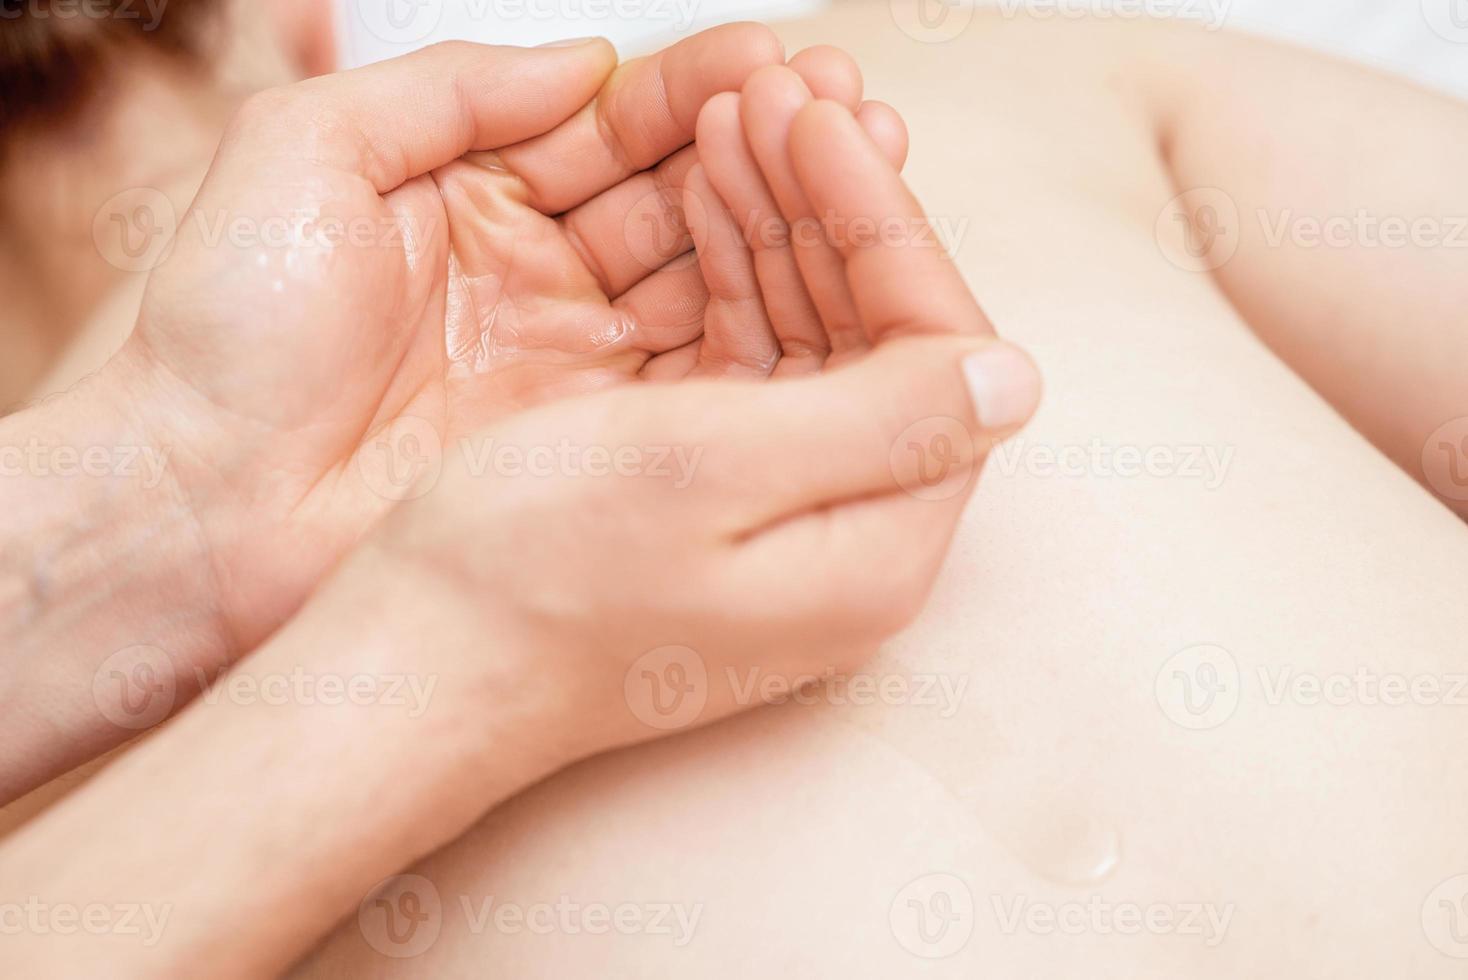 óleo de massagem nas palmas das mãos do massageador. foto